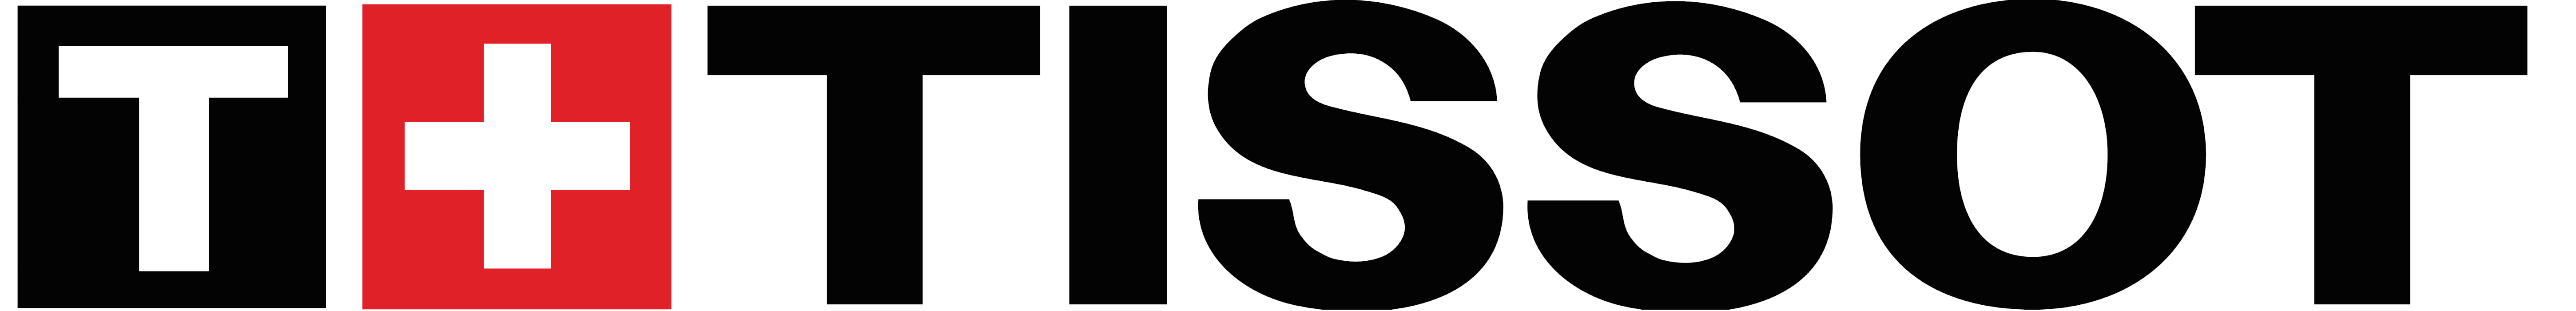 Tissots logga i svart och rött, först är ett stort vitt T i en svart fyrkant, sen är det ett vitt plustecken i en röd fyrkant och sen texten "Tissot" i stora tjocka bokstäver i svart.